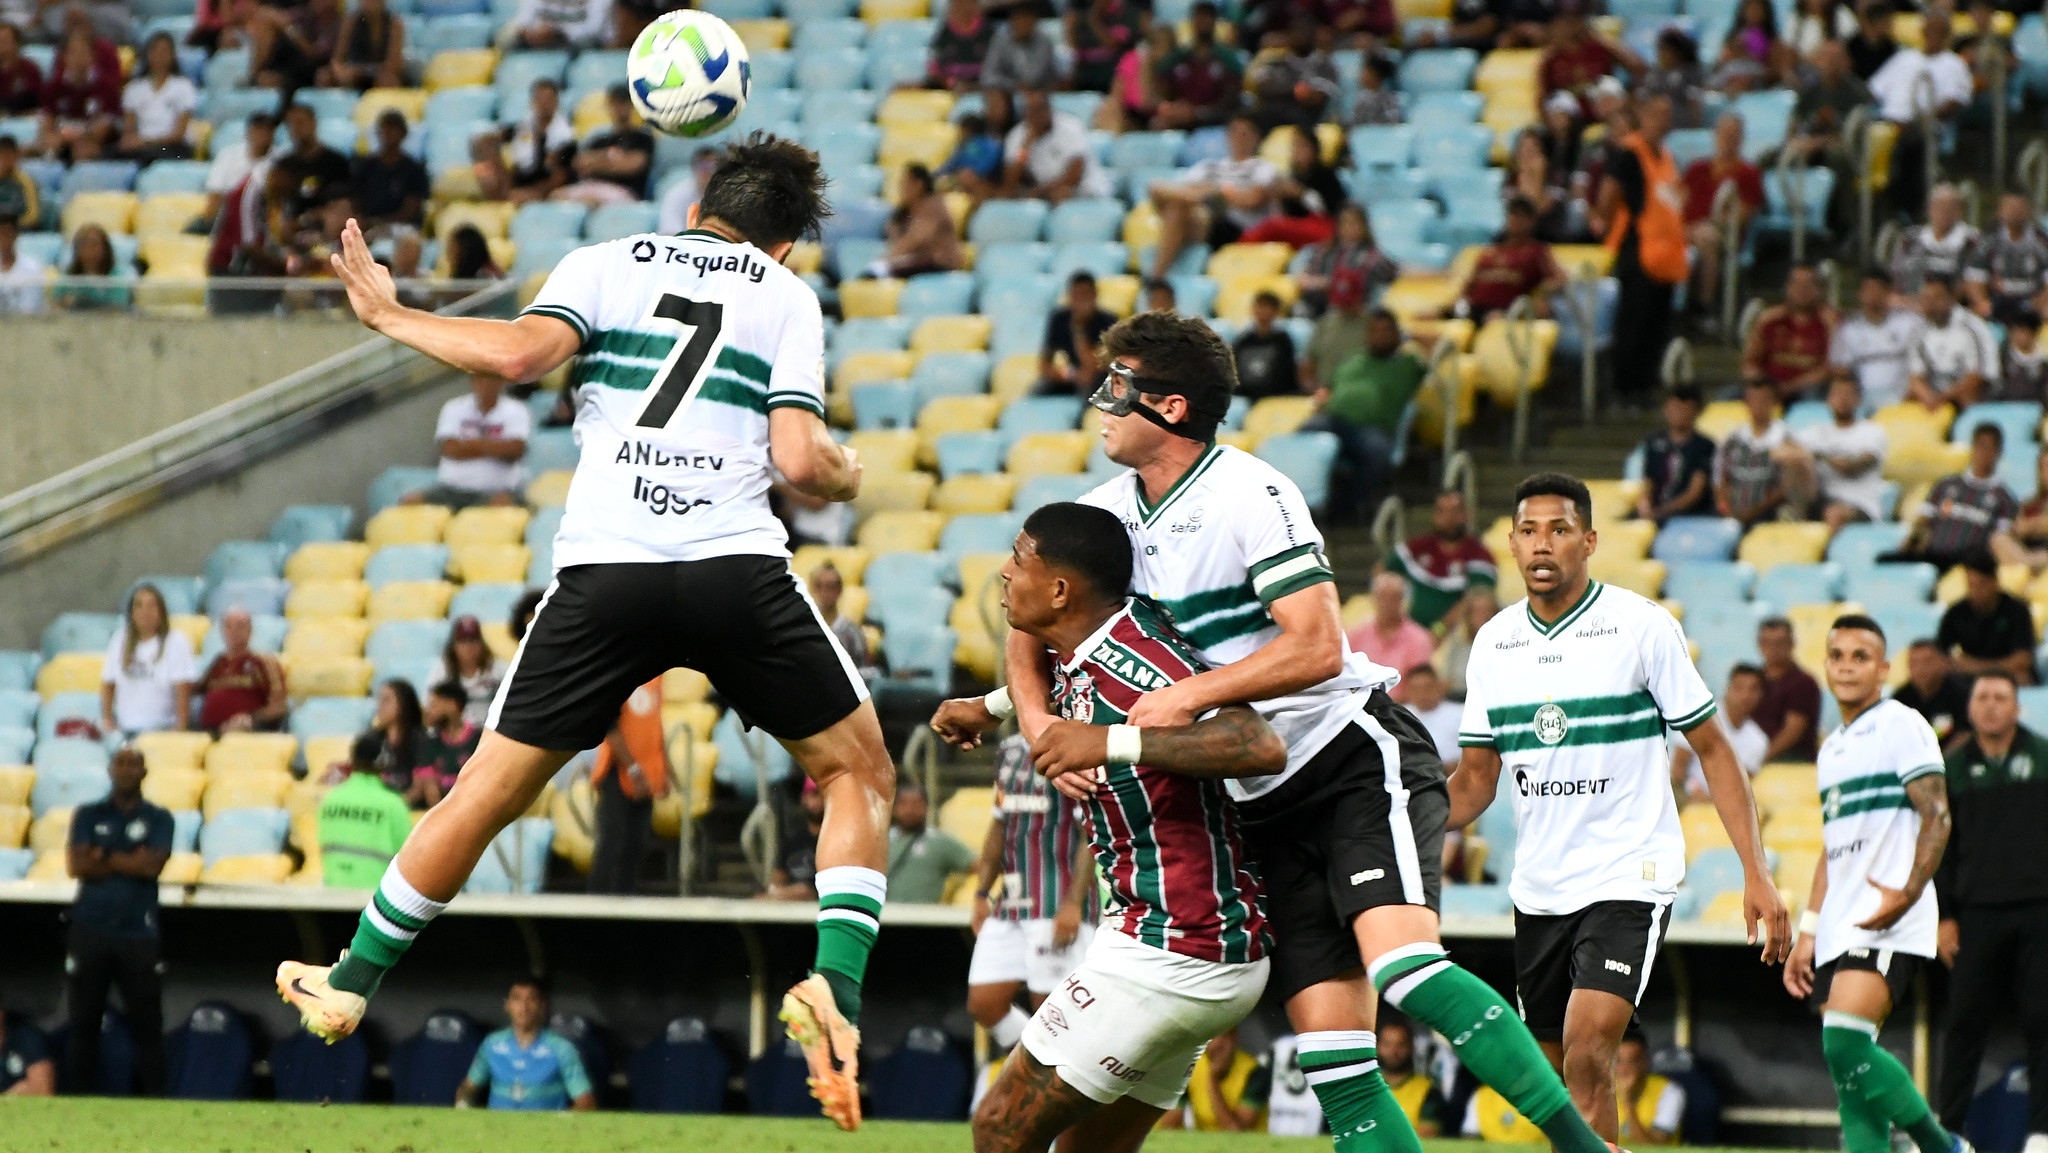 Coxa confirma seu rebaixamento - Foto: Divulgação/Fluminense